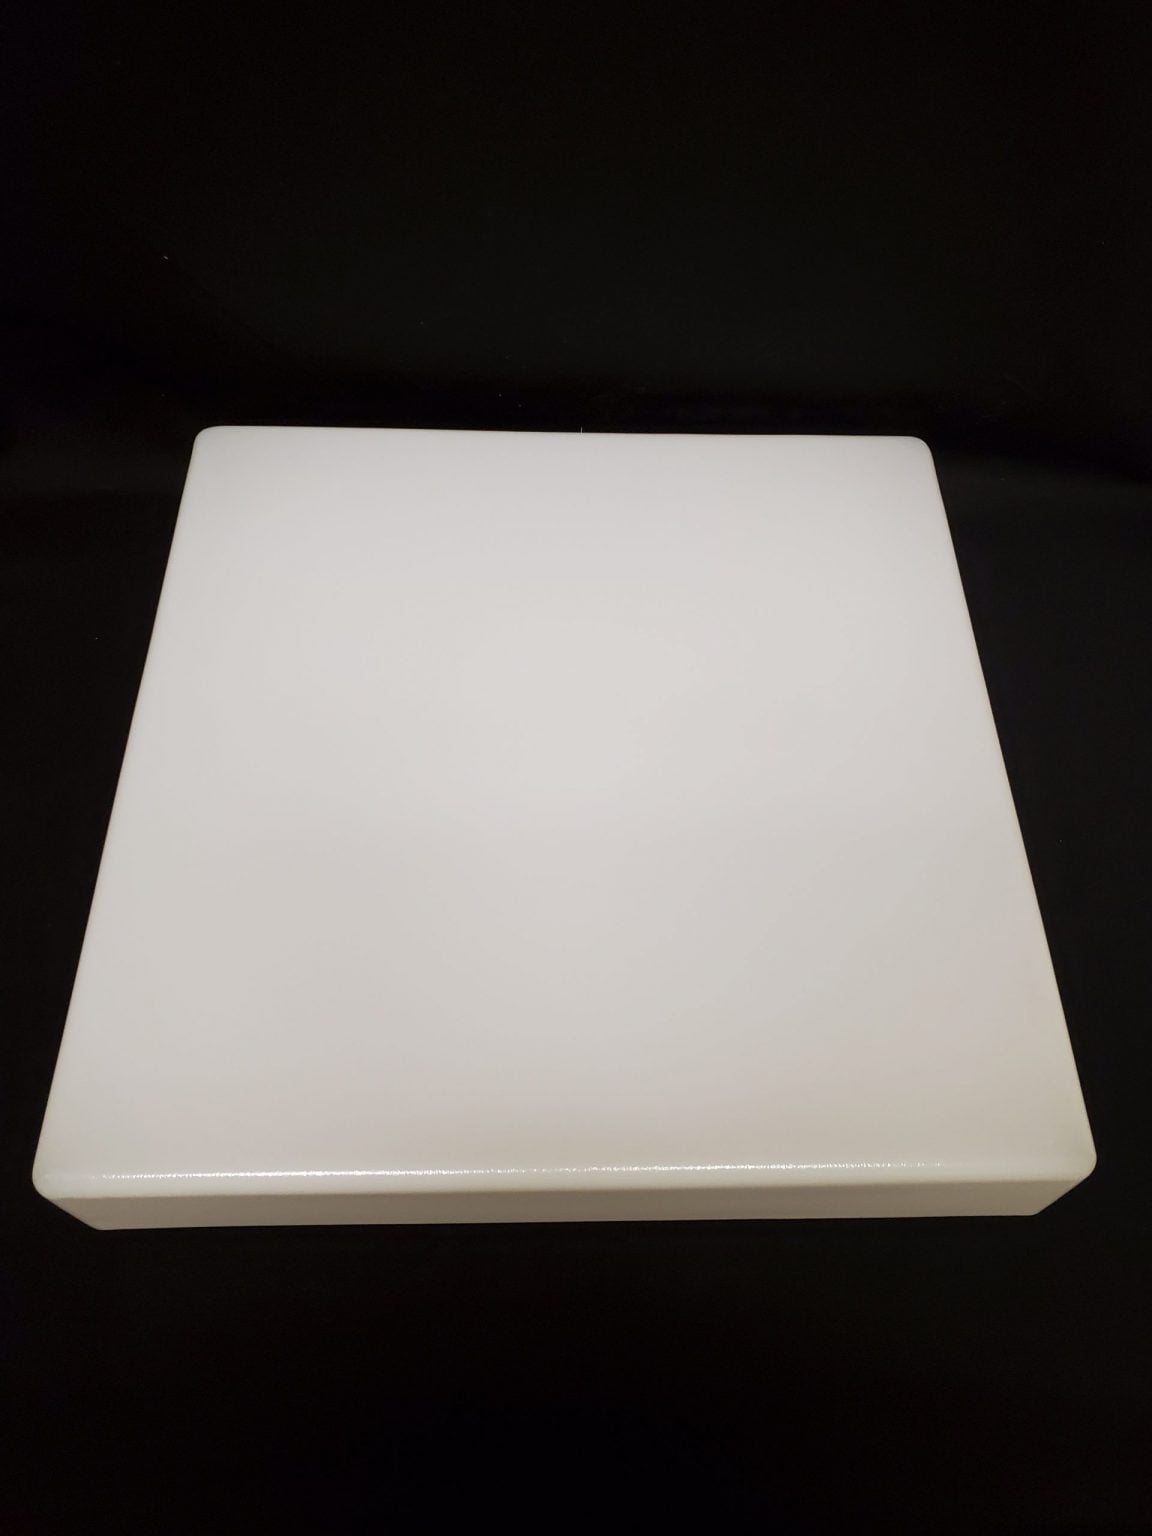 square white plastic diffuser